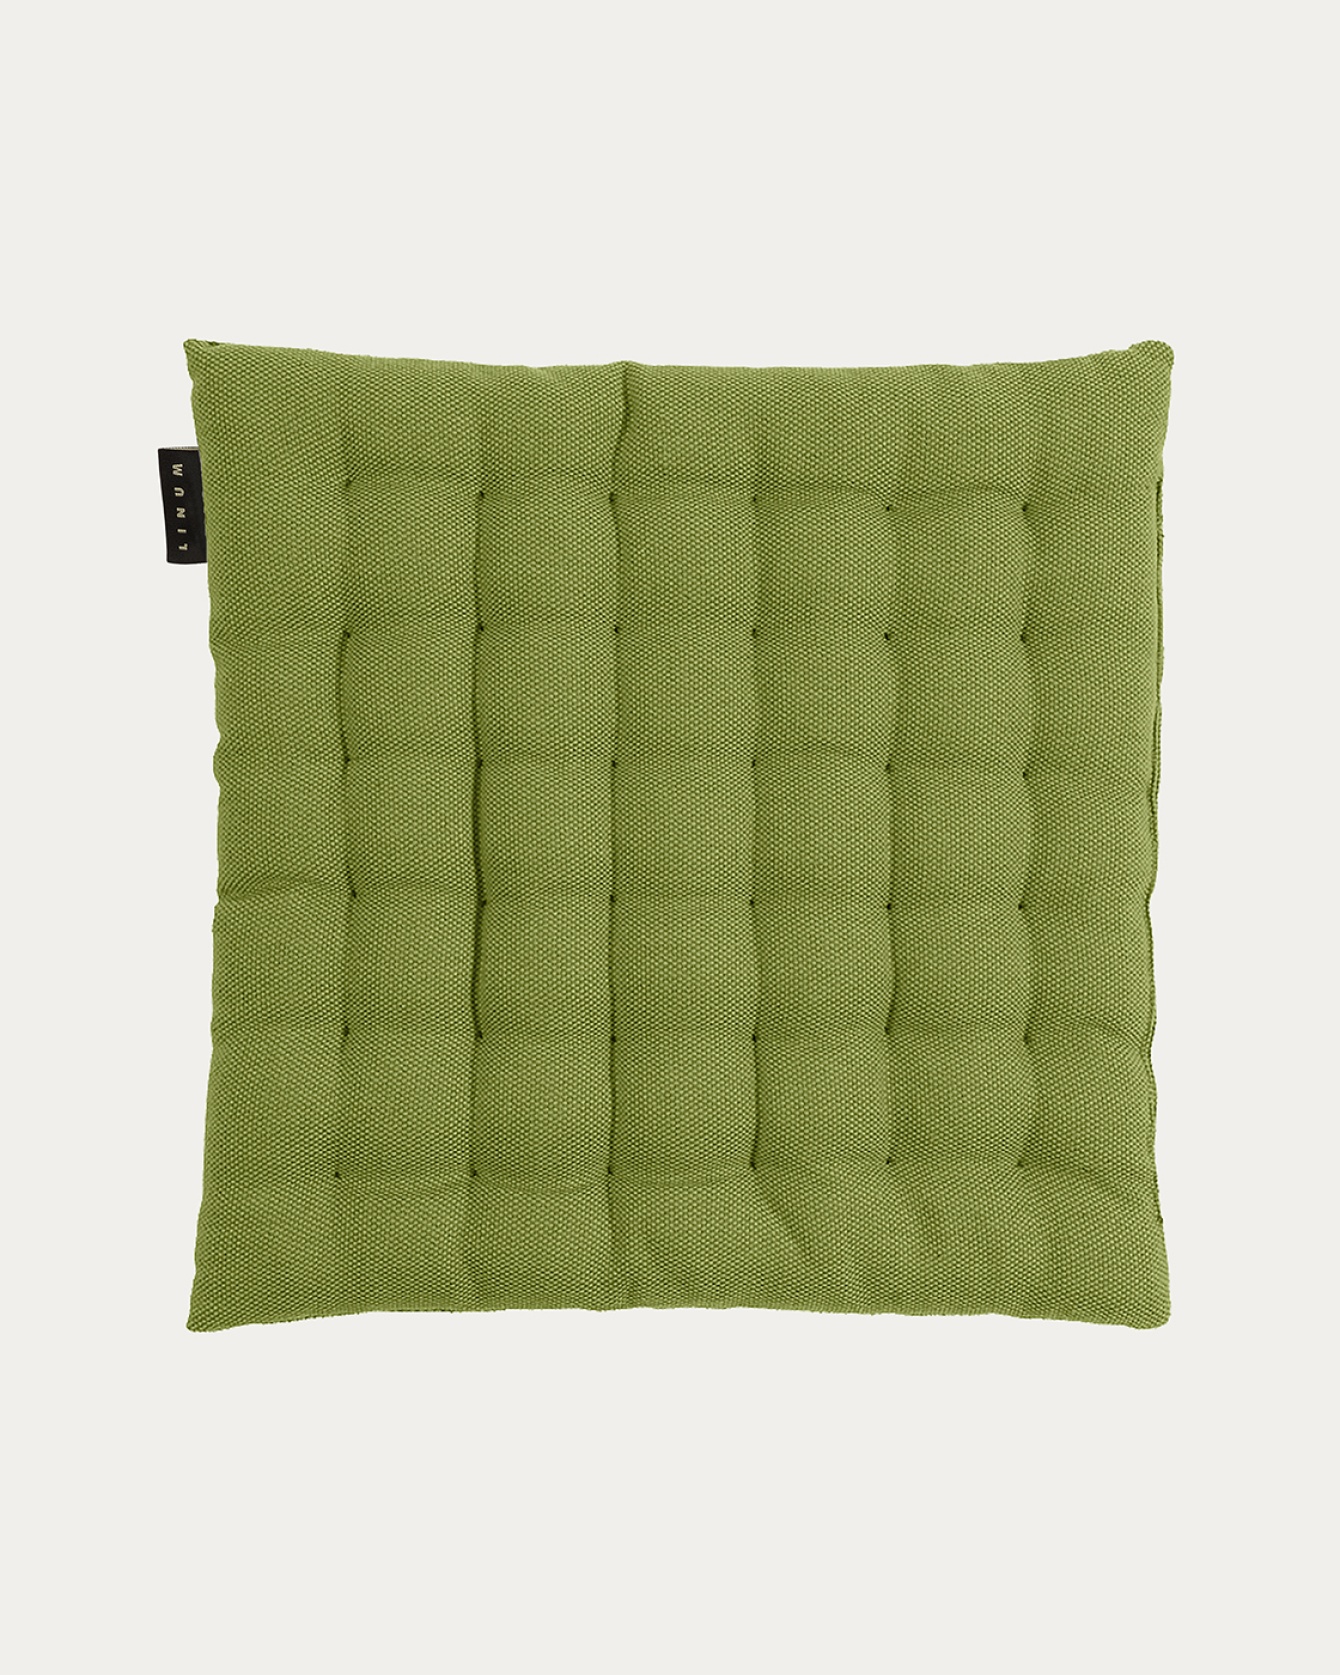 Produktbild moosgrün PEPPER Sitzkissen aus weicher Baumwolle mit Füllung aus recyceltem Polyester von LINUM DESIGN. Größe 40x40 cm.